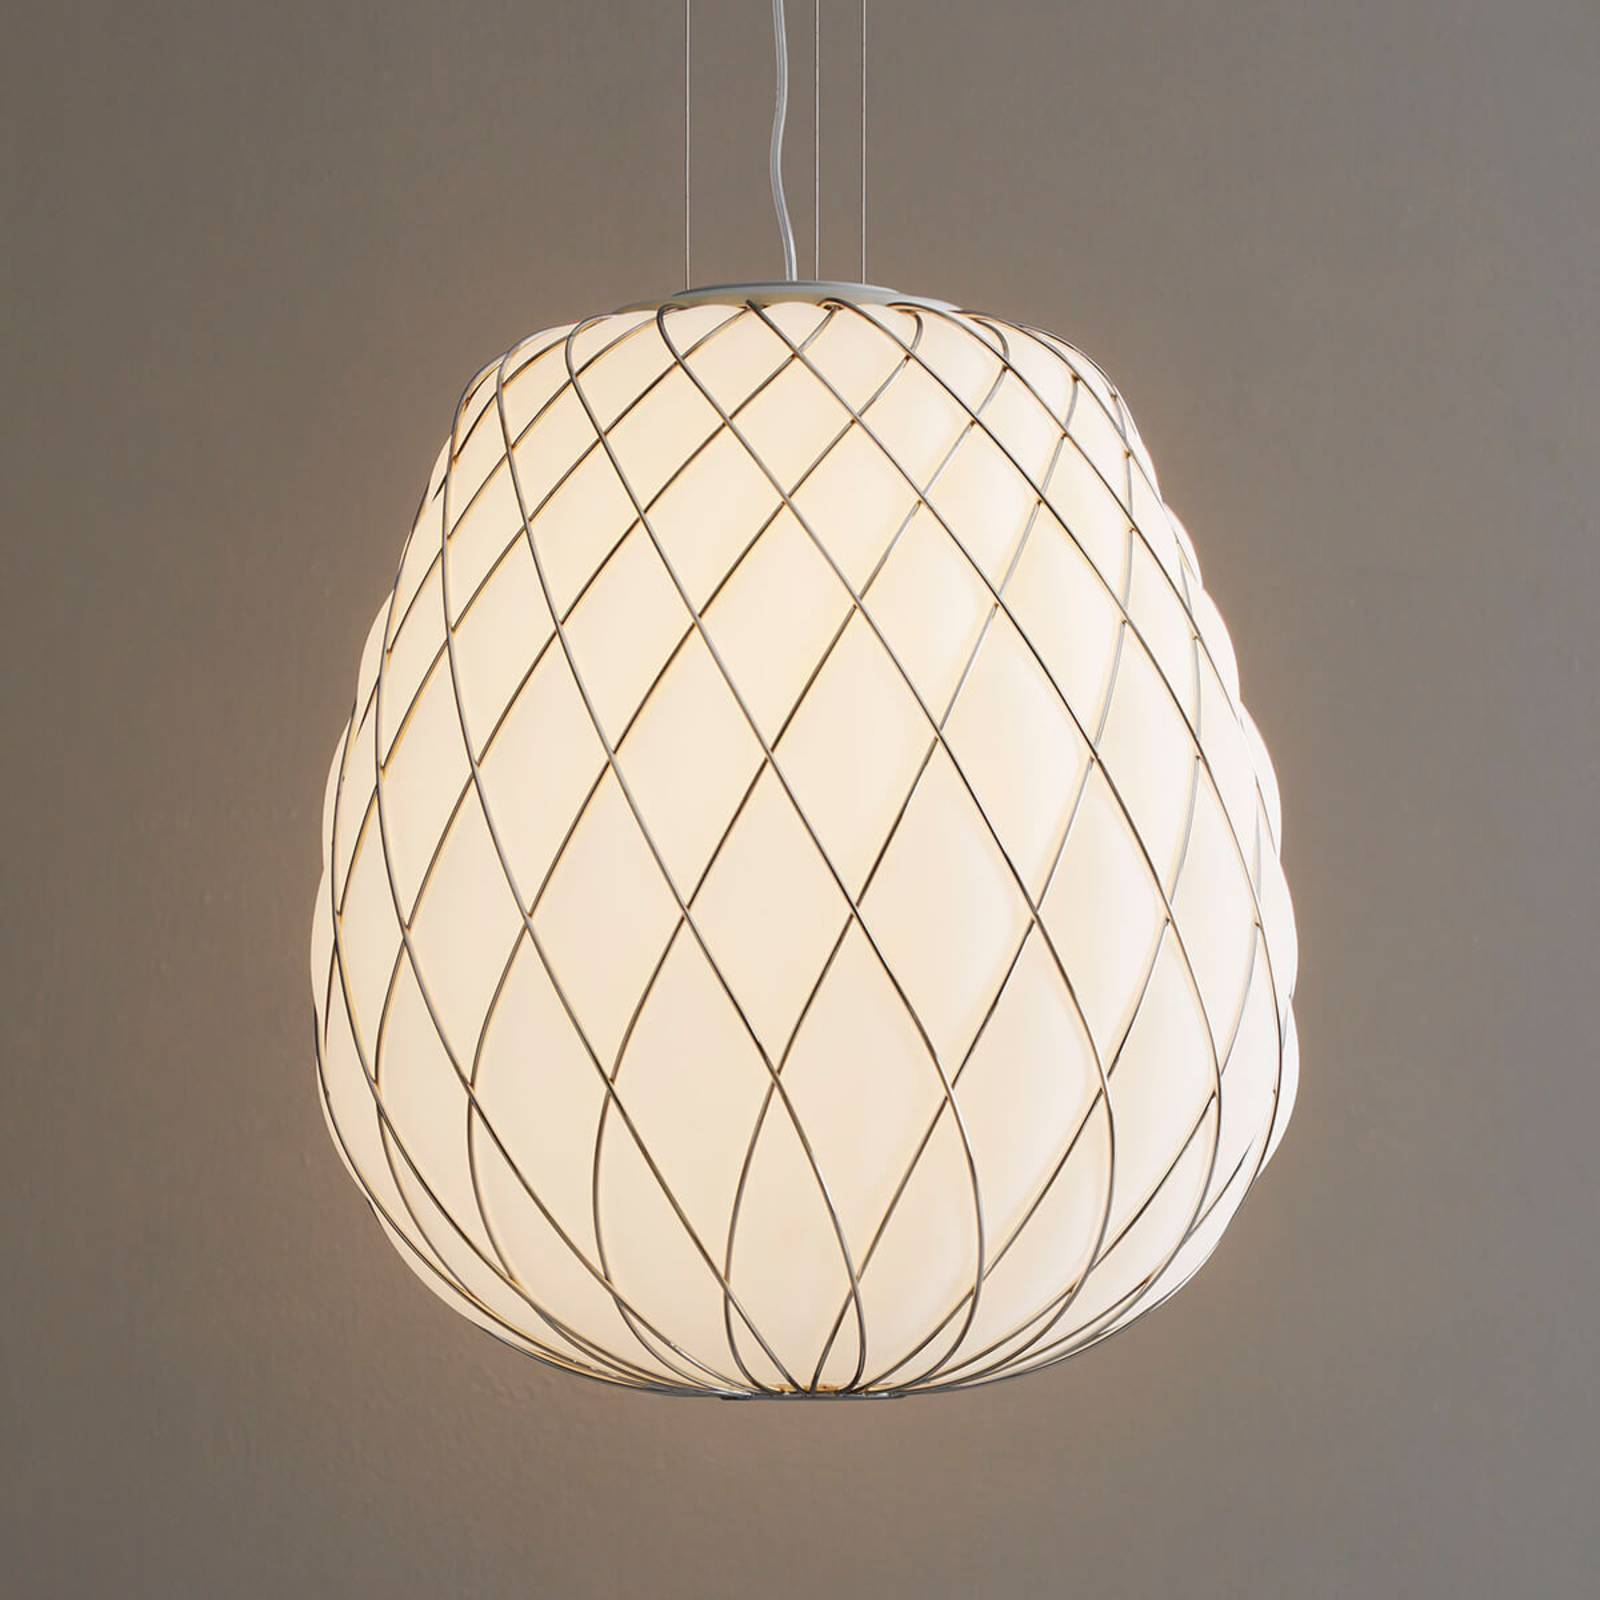 Pinecone - design hanglamp van melkglas